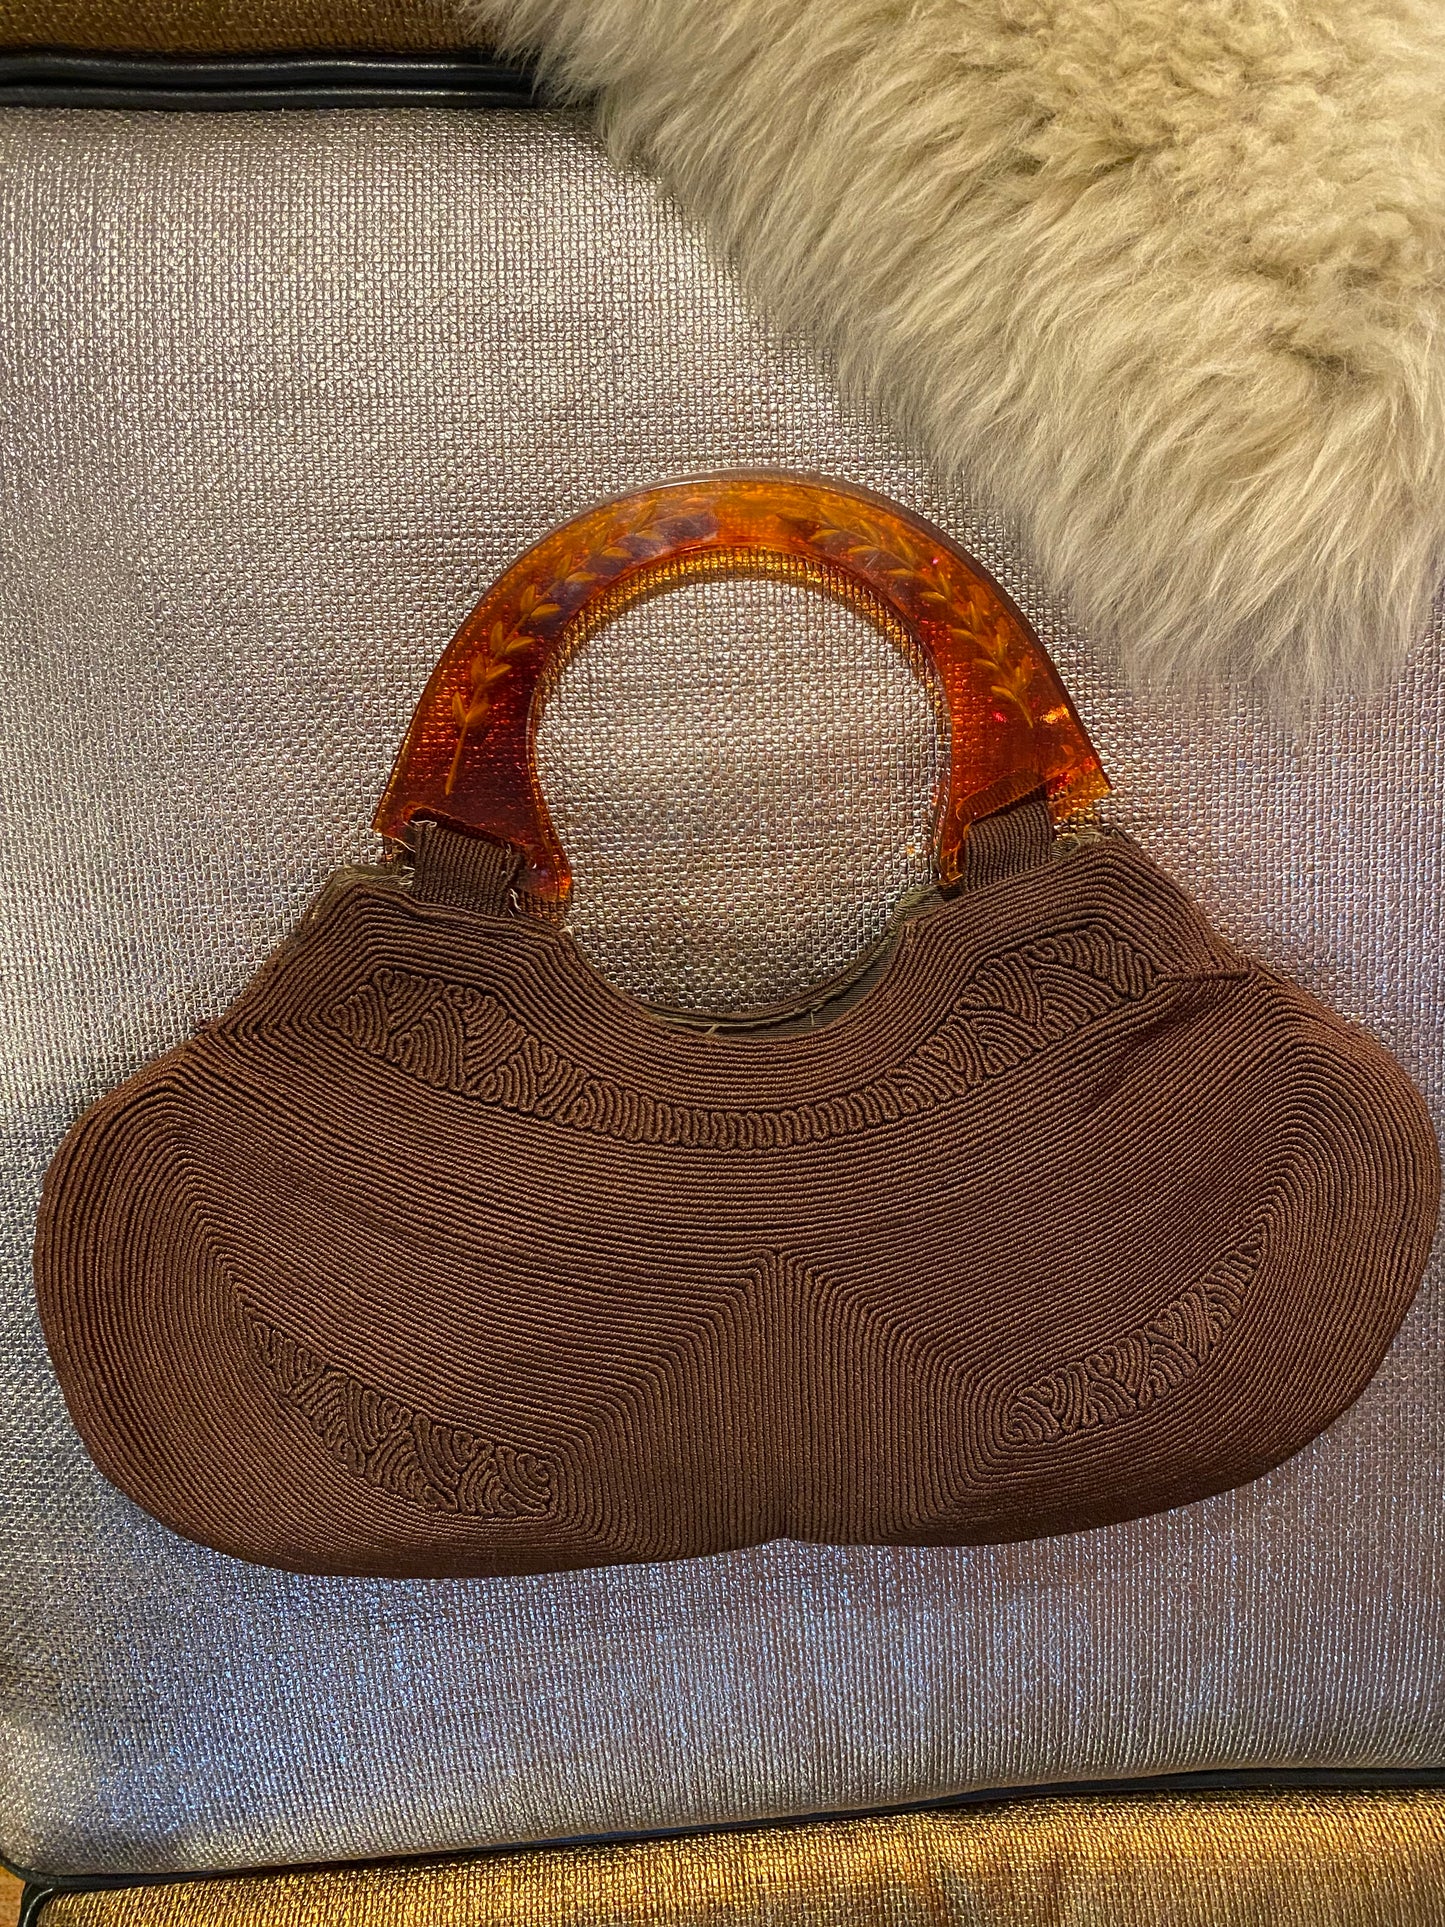 40s Brown Corde Handbag Tortoiseshell Lucite Strap